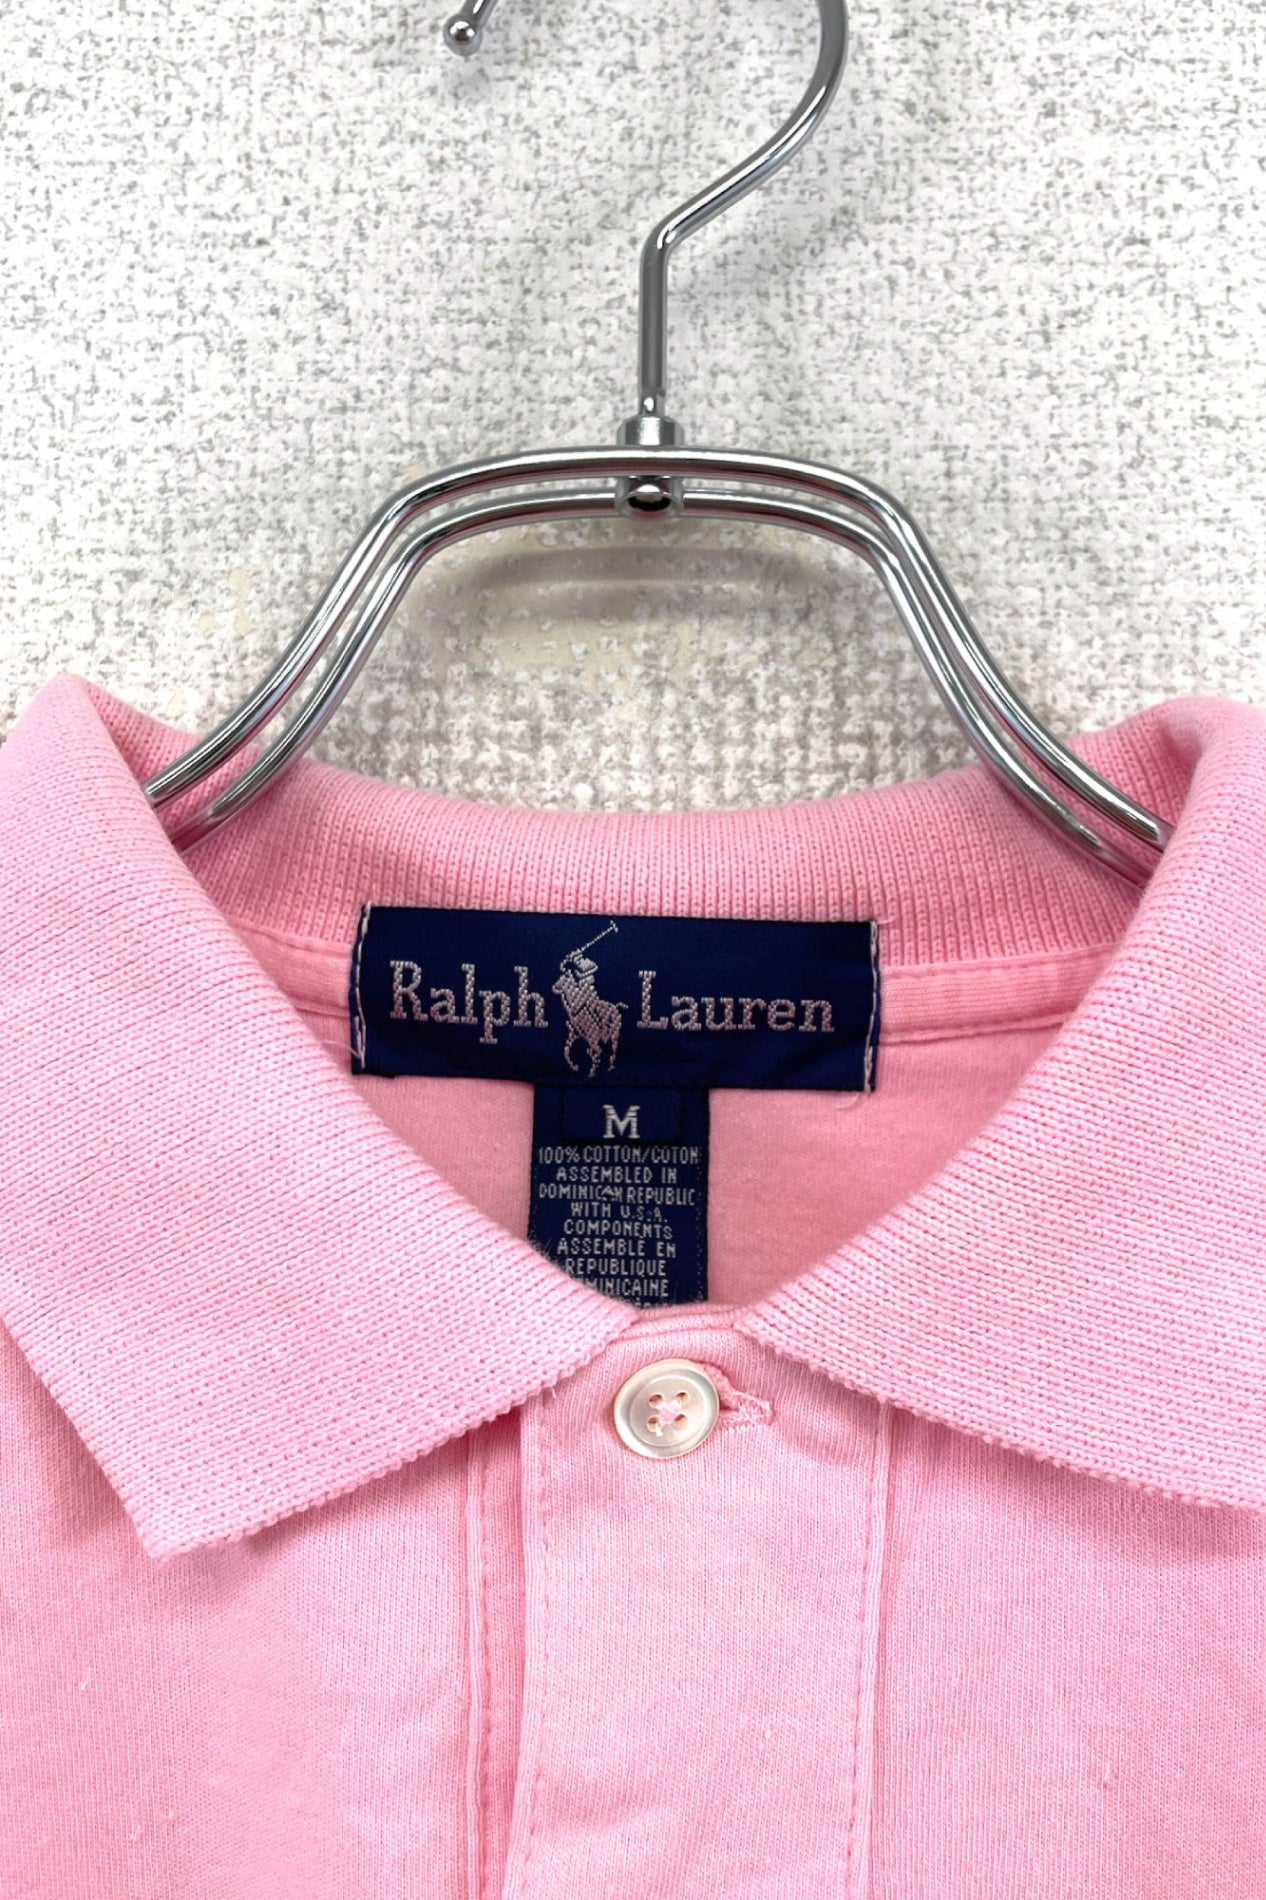 Ralph Lauren pink polo shirt